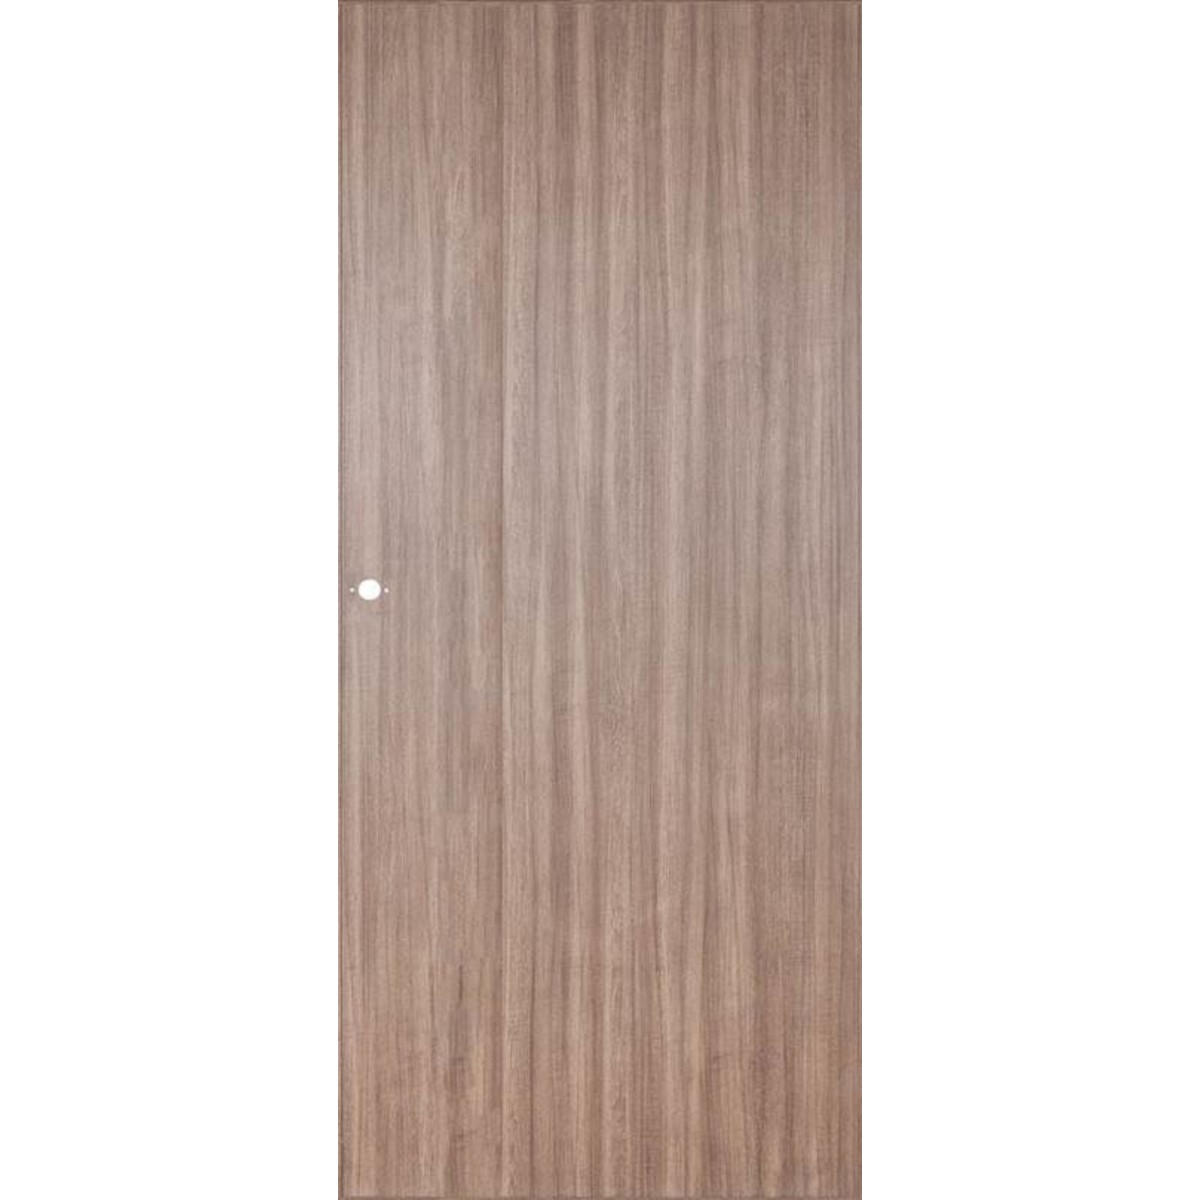 Дверь межкомнатная глухая Селена 90x200 см цвет орех